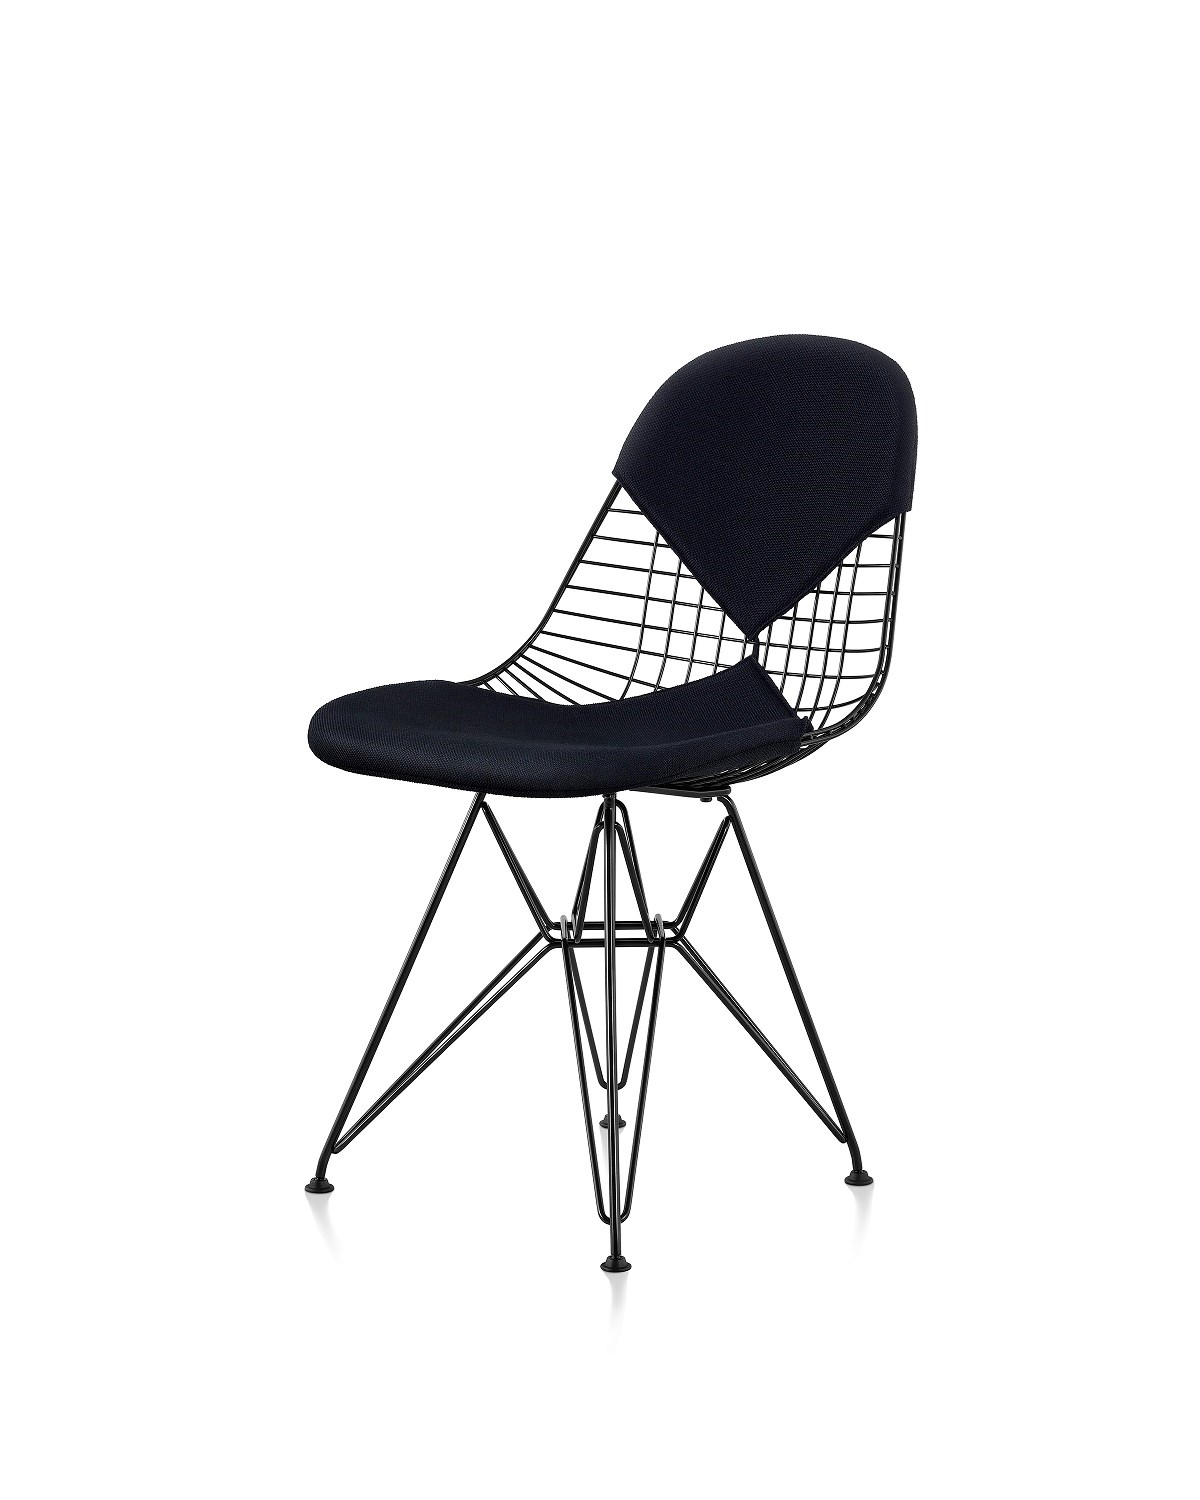 Hermanmiller Eames Dkr Chair 2